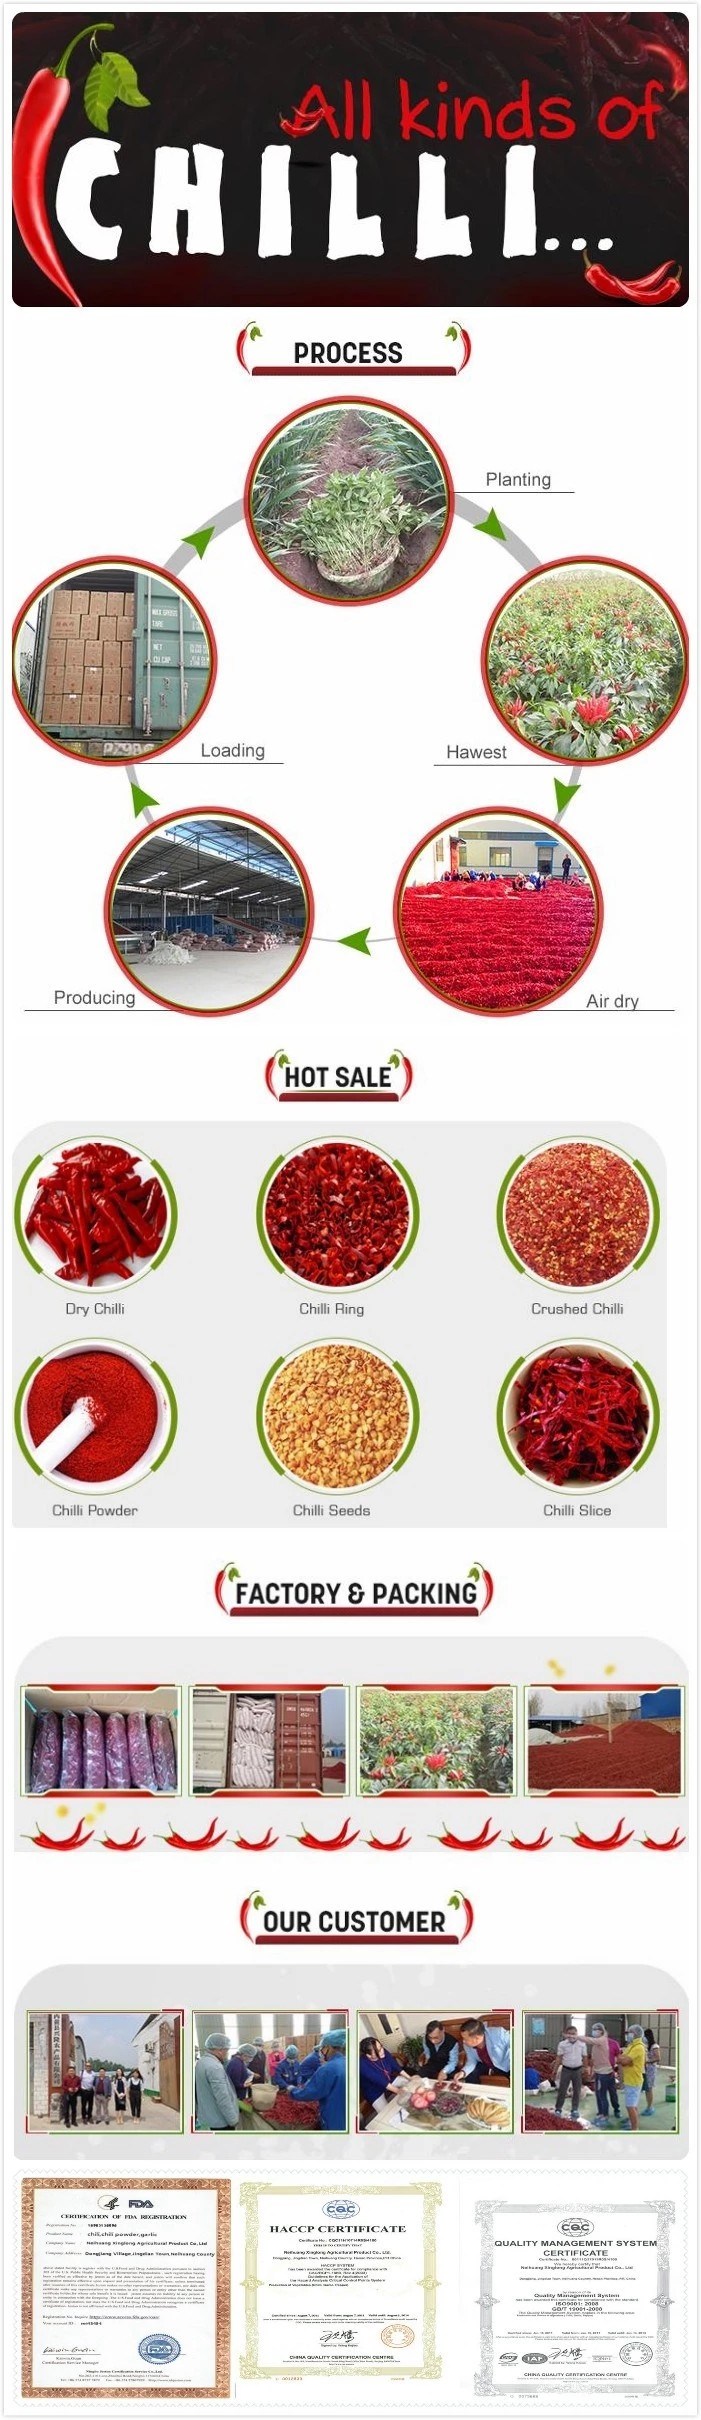 Red Hot Pepper Cayenne Ground Powder